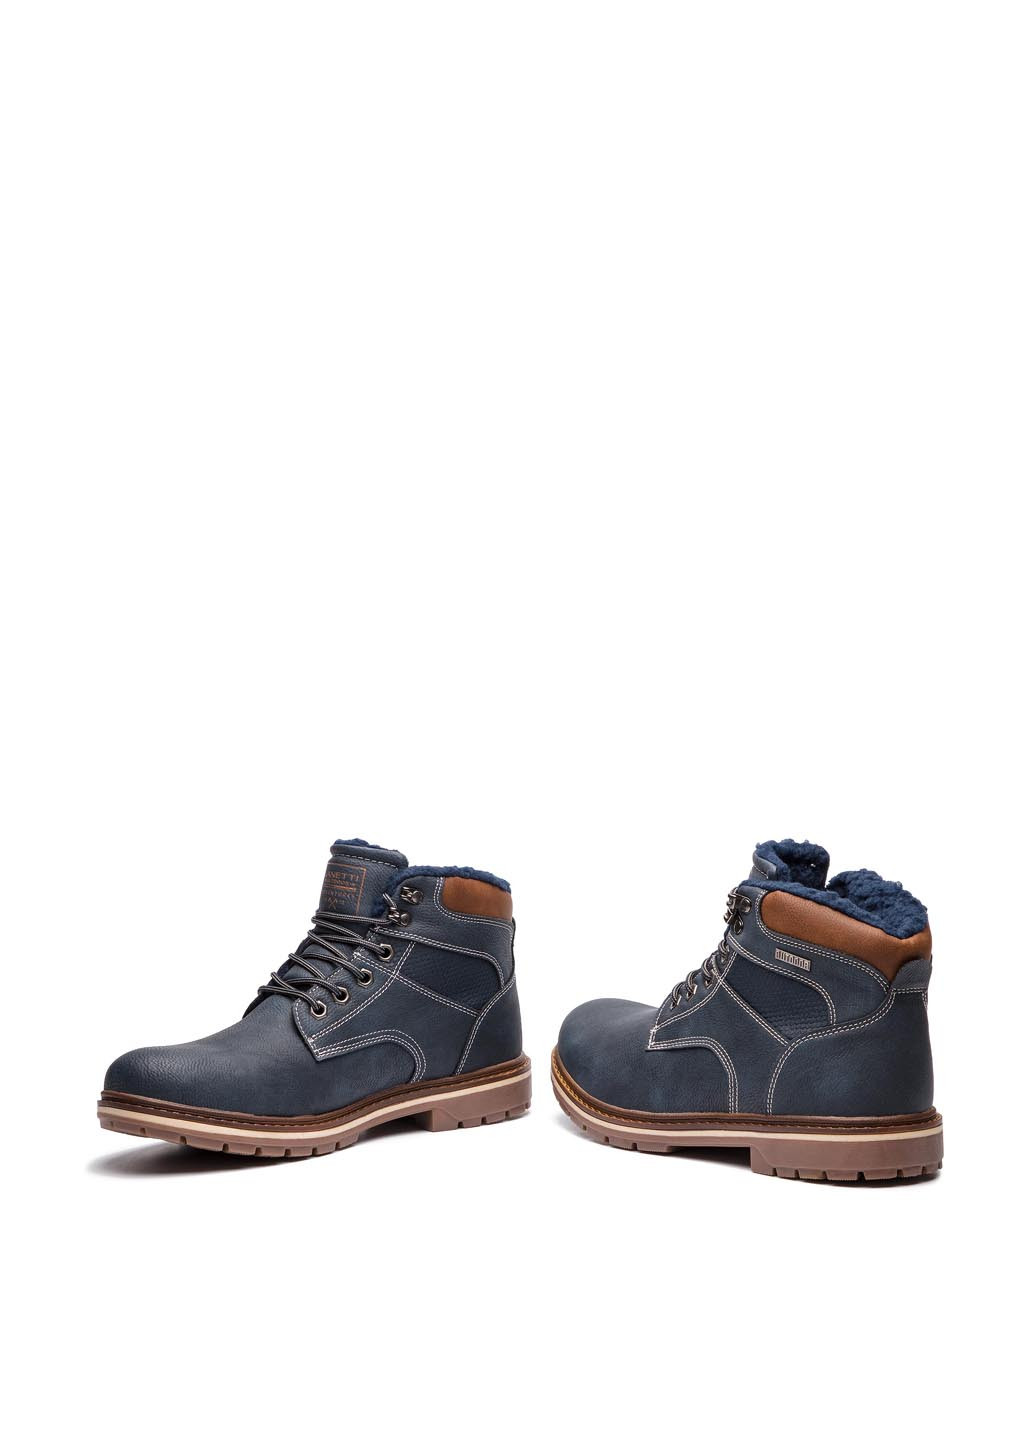 Темно-синие осенние черевики smp07-171041-01 Lanetti